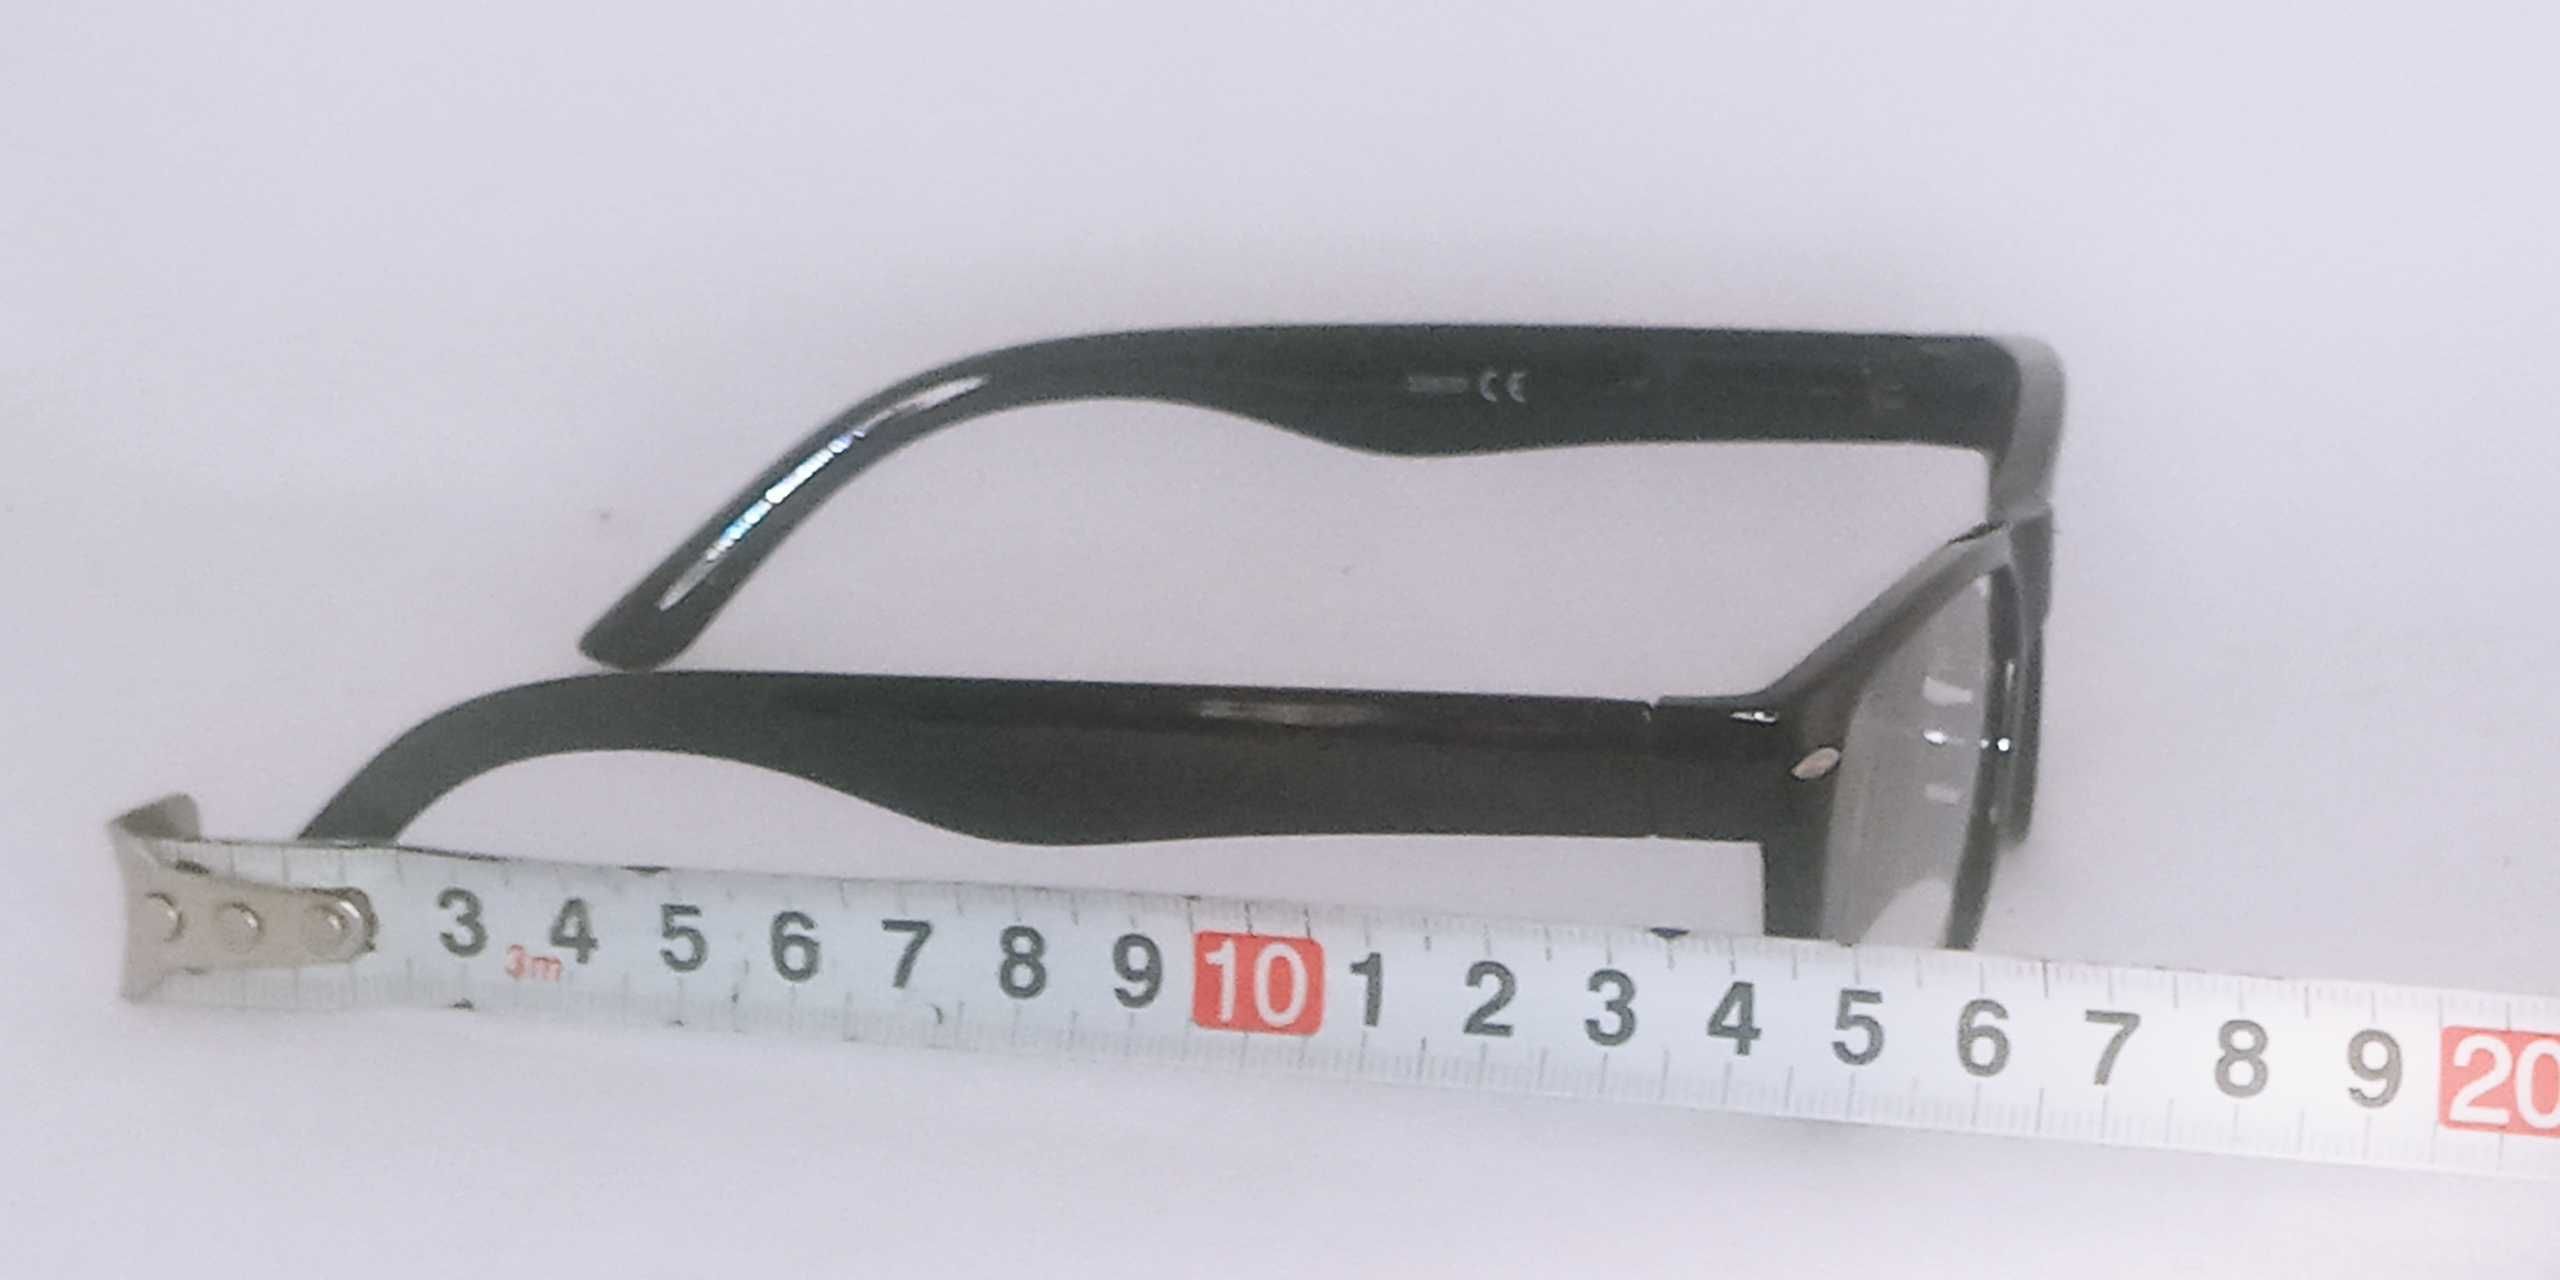 Okulary plusy do czytania korekcyjne +2 dioptri